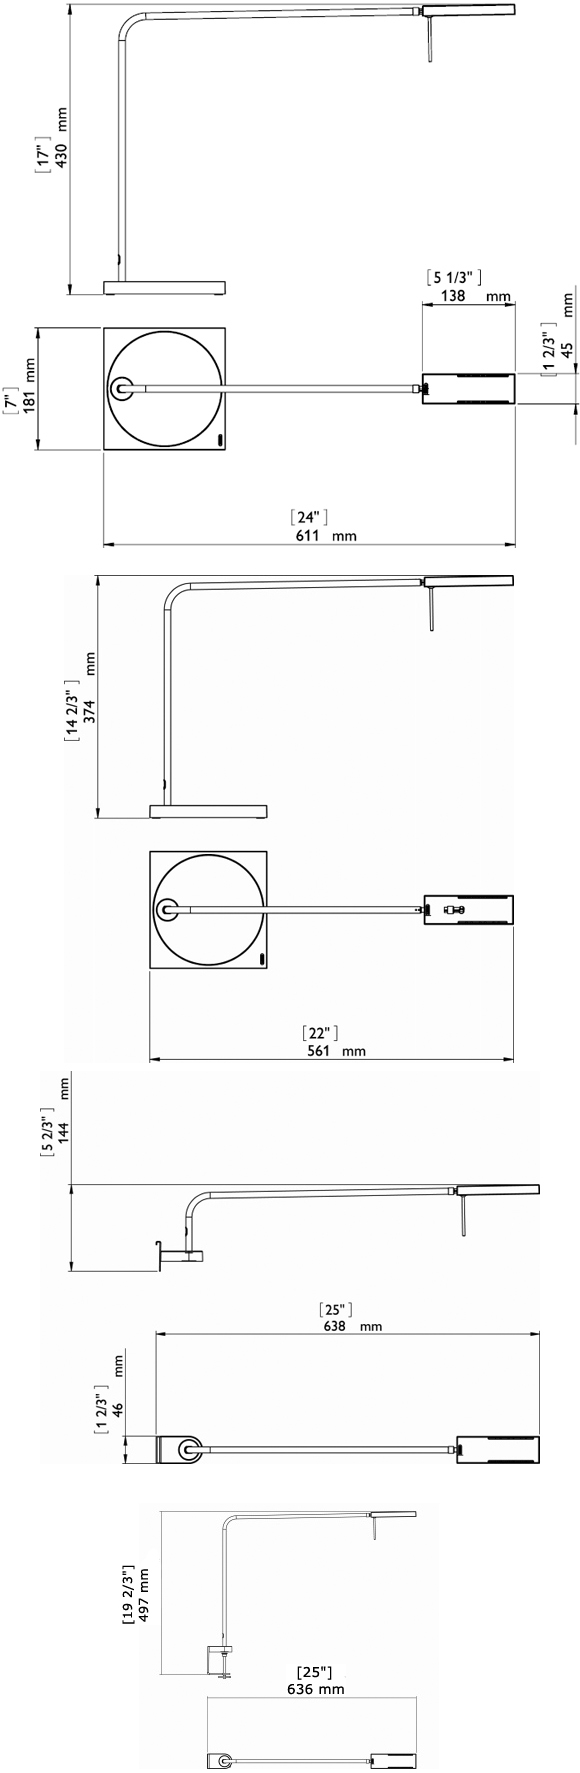 Technical Drawing for Luxo Ninety 16747 or 16748 Energy Efficient LED Ergonomic Task Light